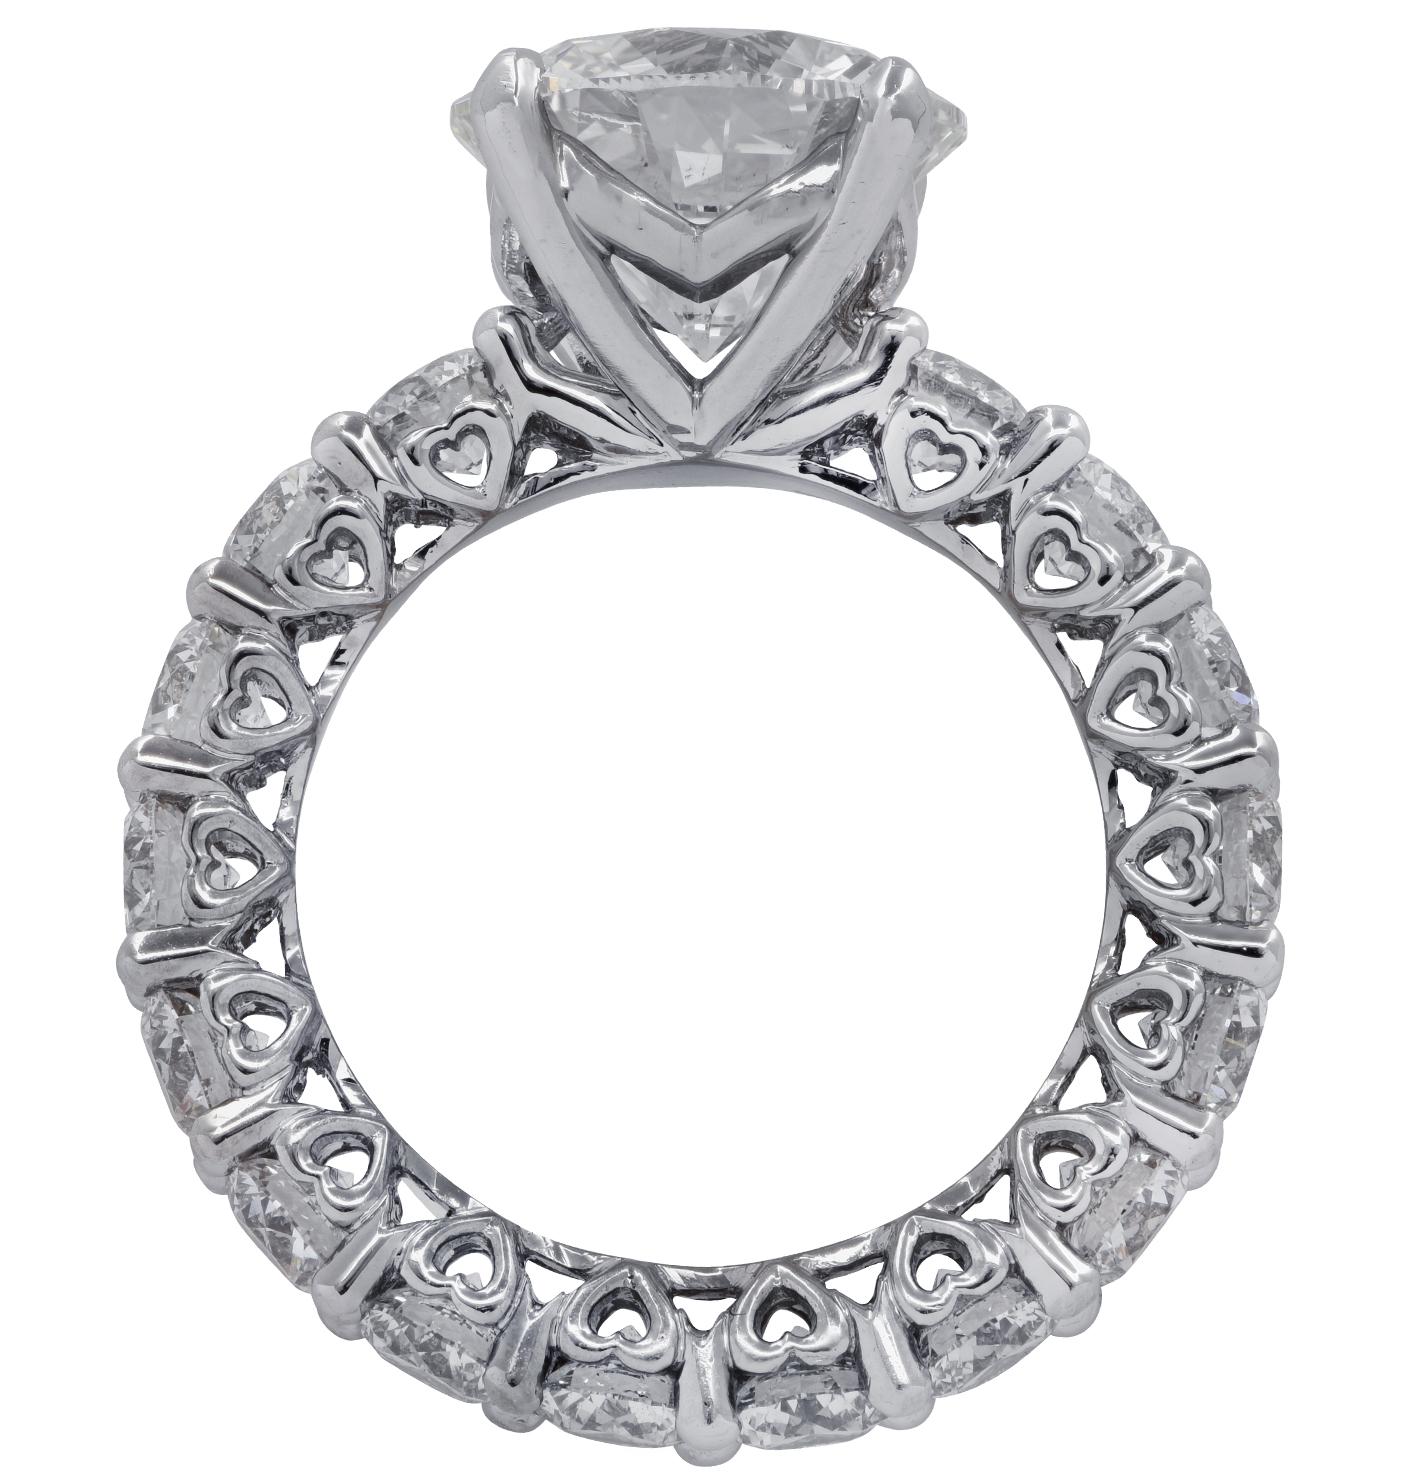 Modern Vivid Diamonds GIA Certified 4.02 Carat Diamond Engagement Ring